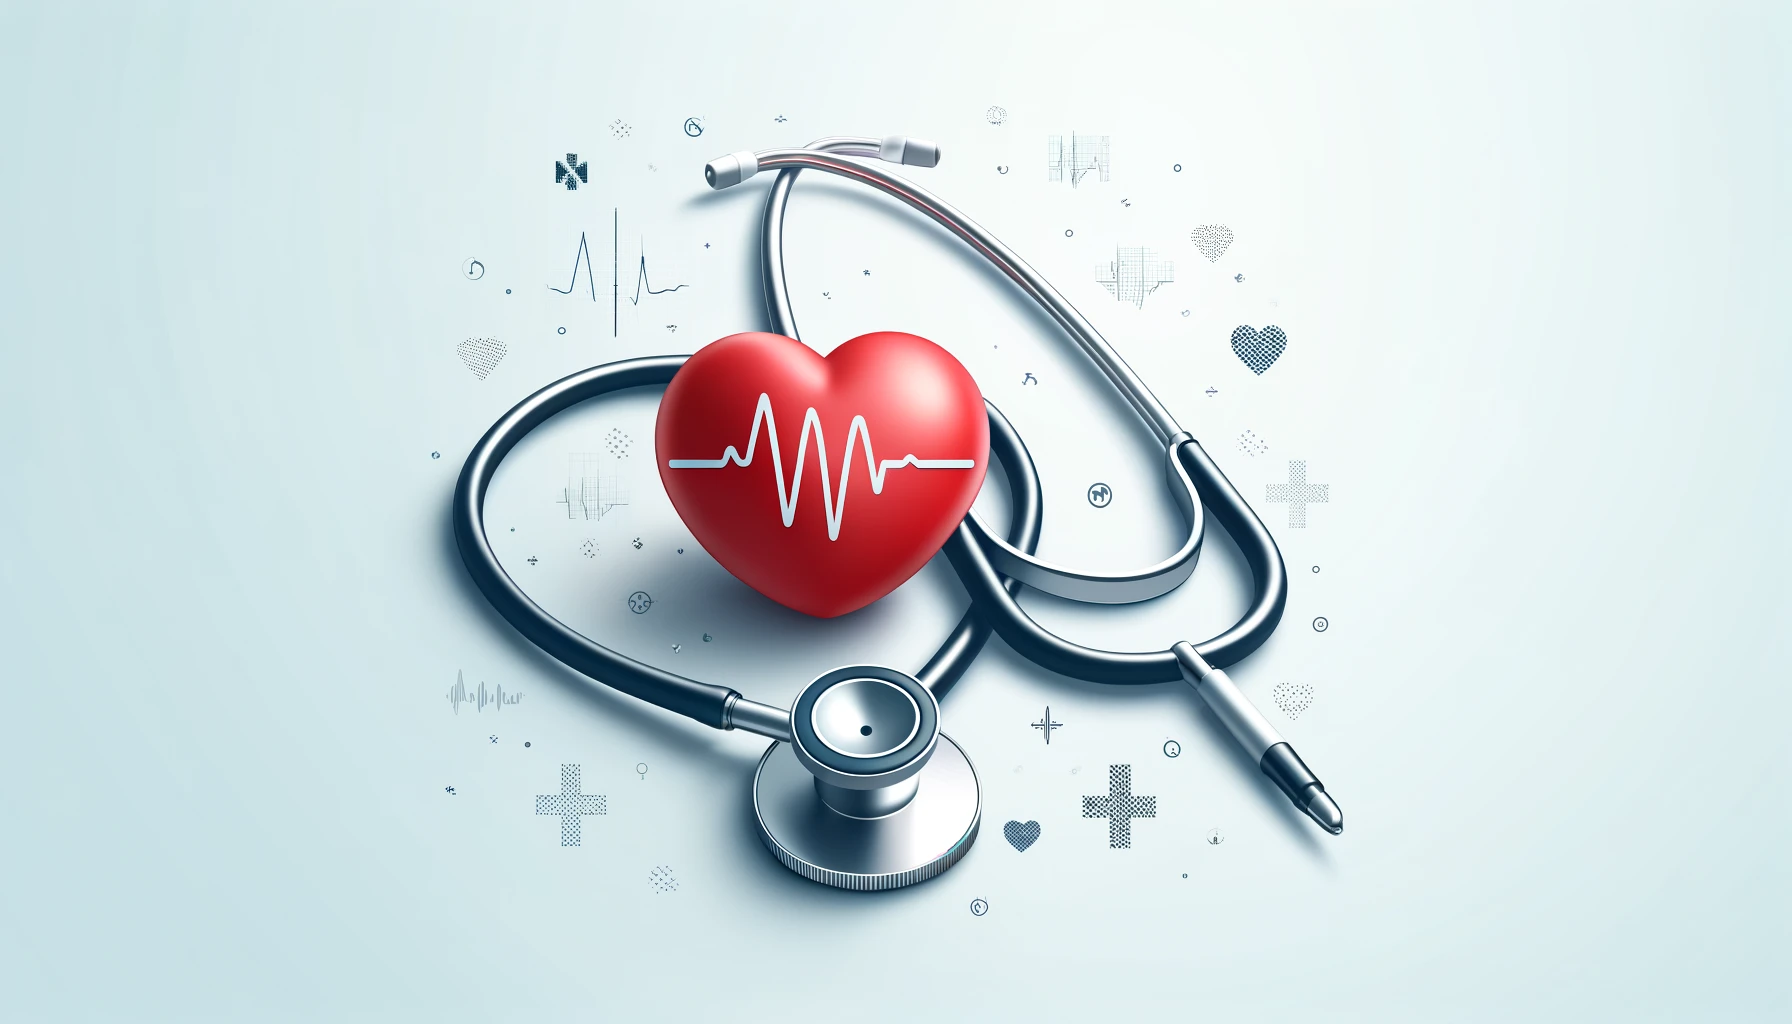 Estetoscópio e coração simbolizando cuidados de saúde em um fundo branco.